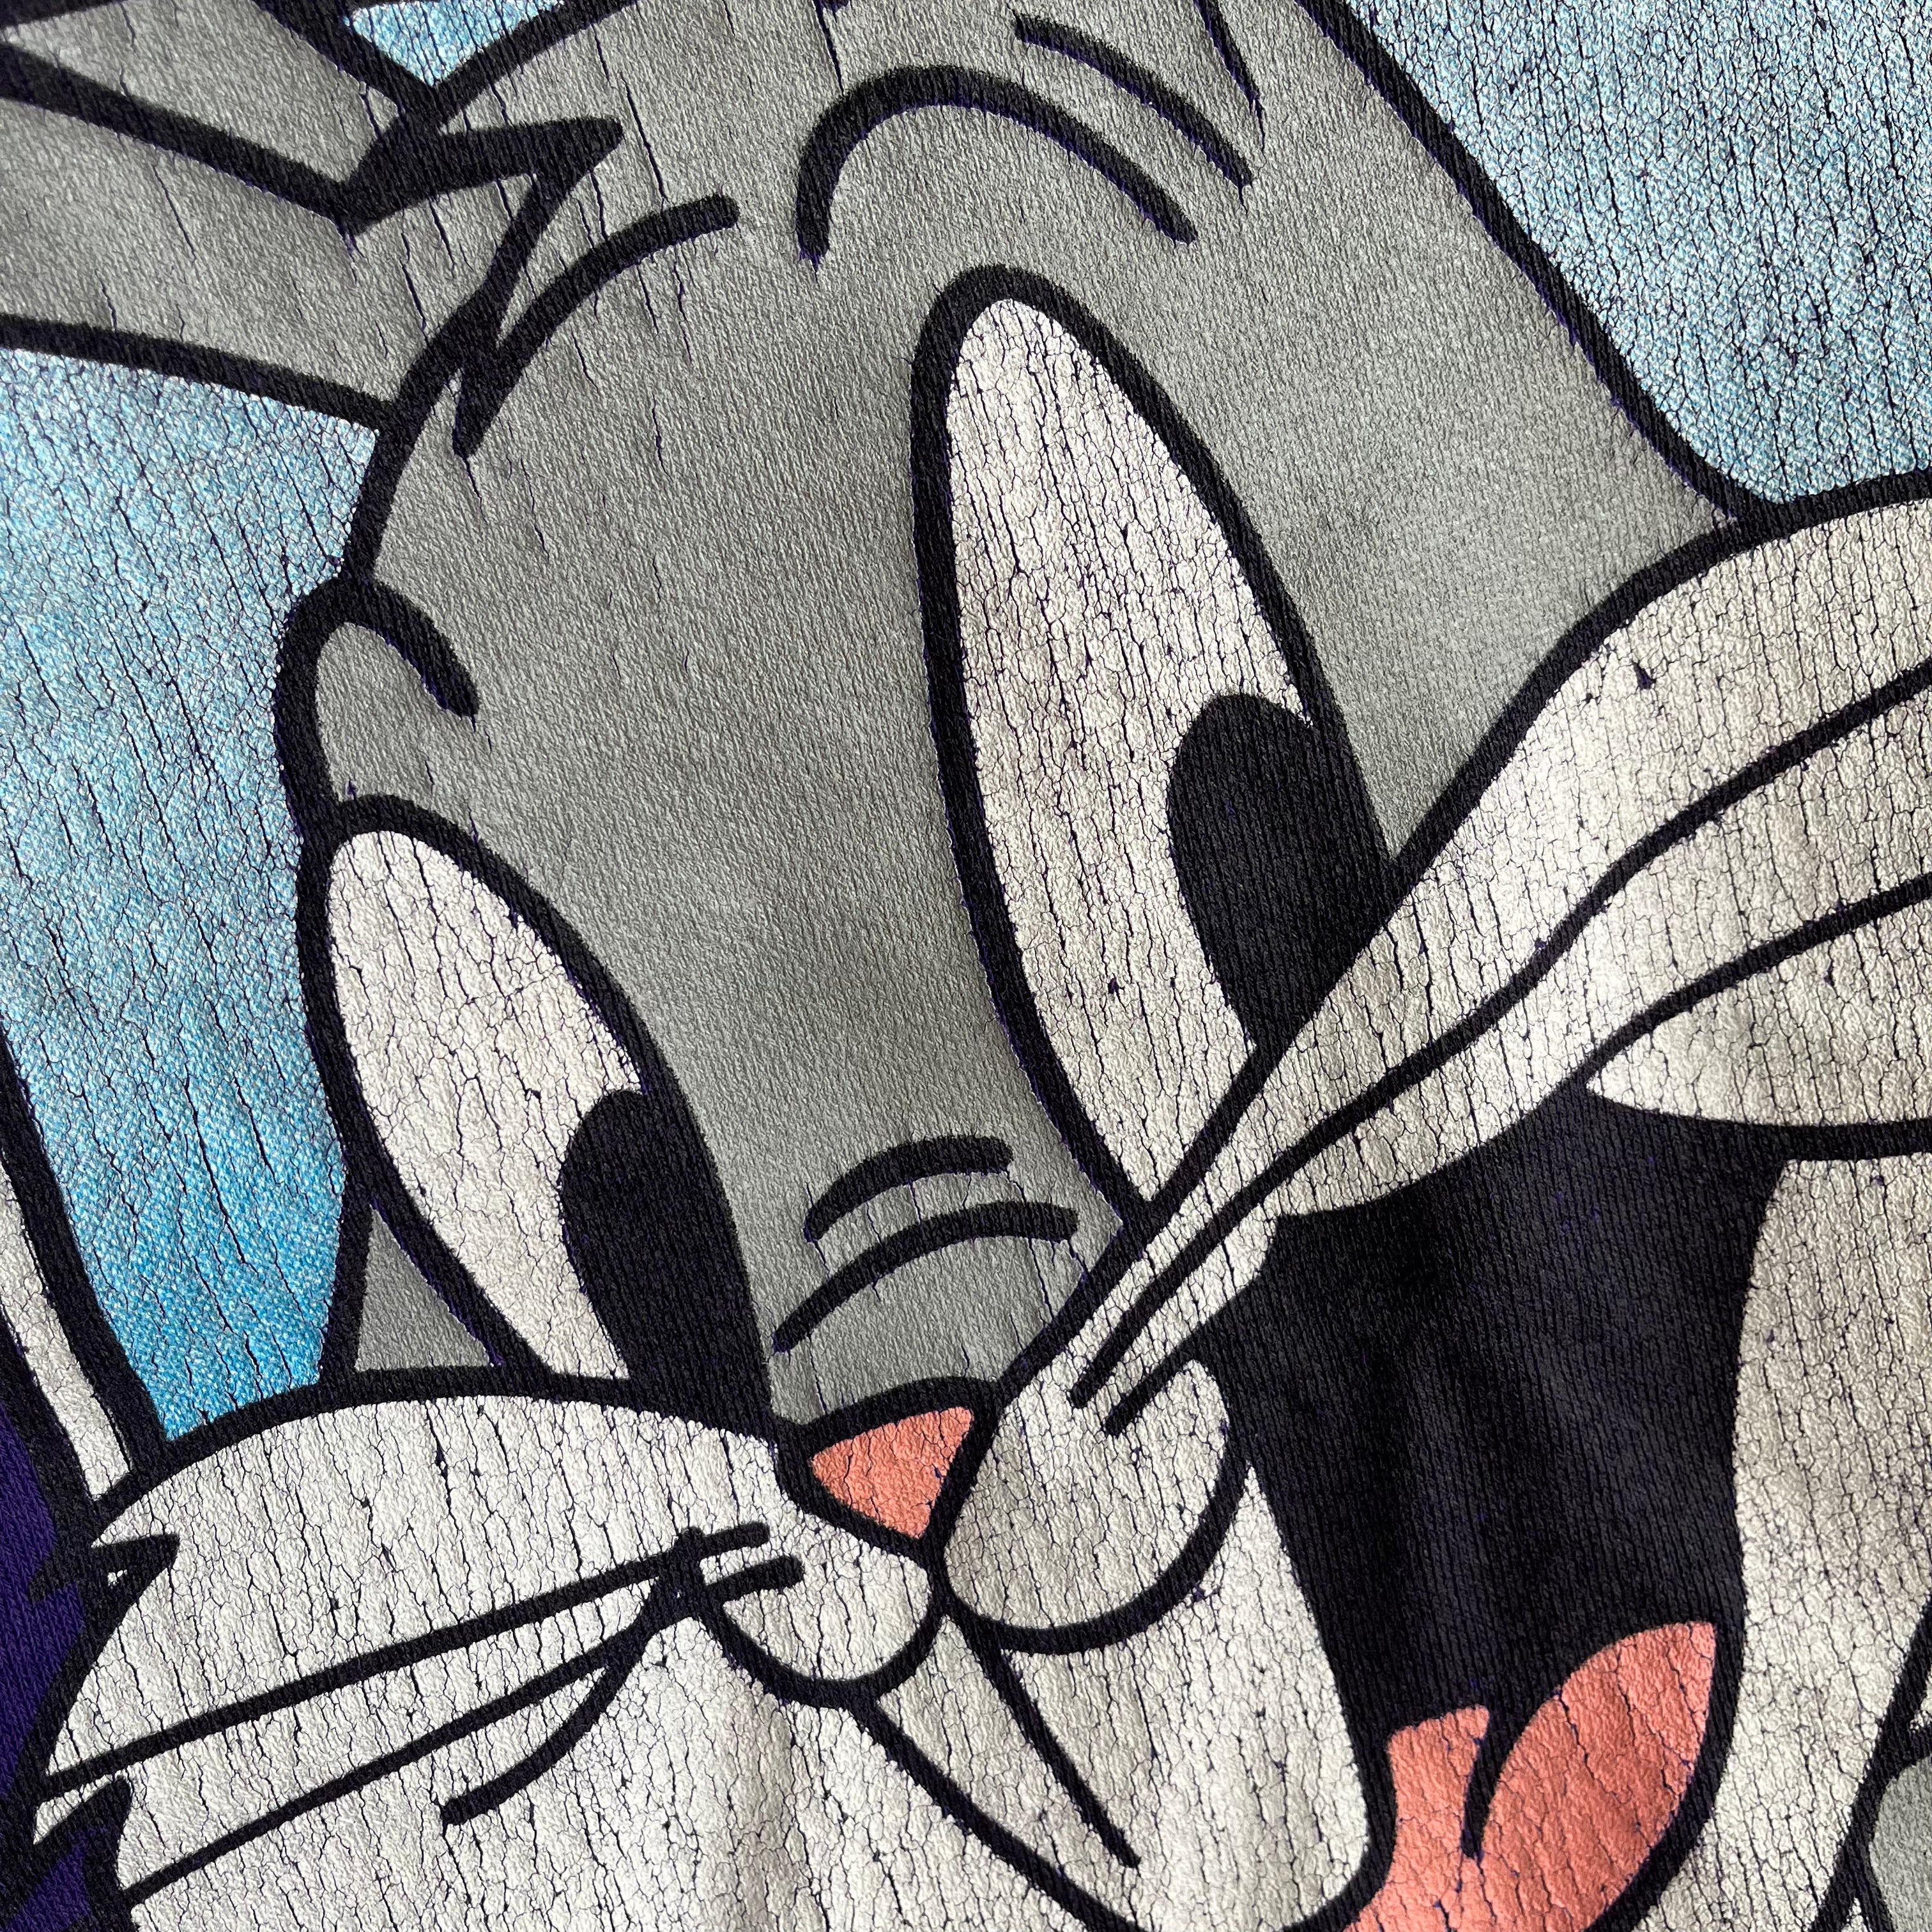 1990 Bugs Bunny XS Sweatshirt